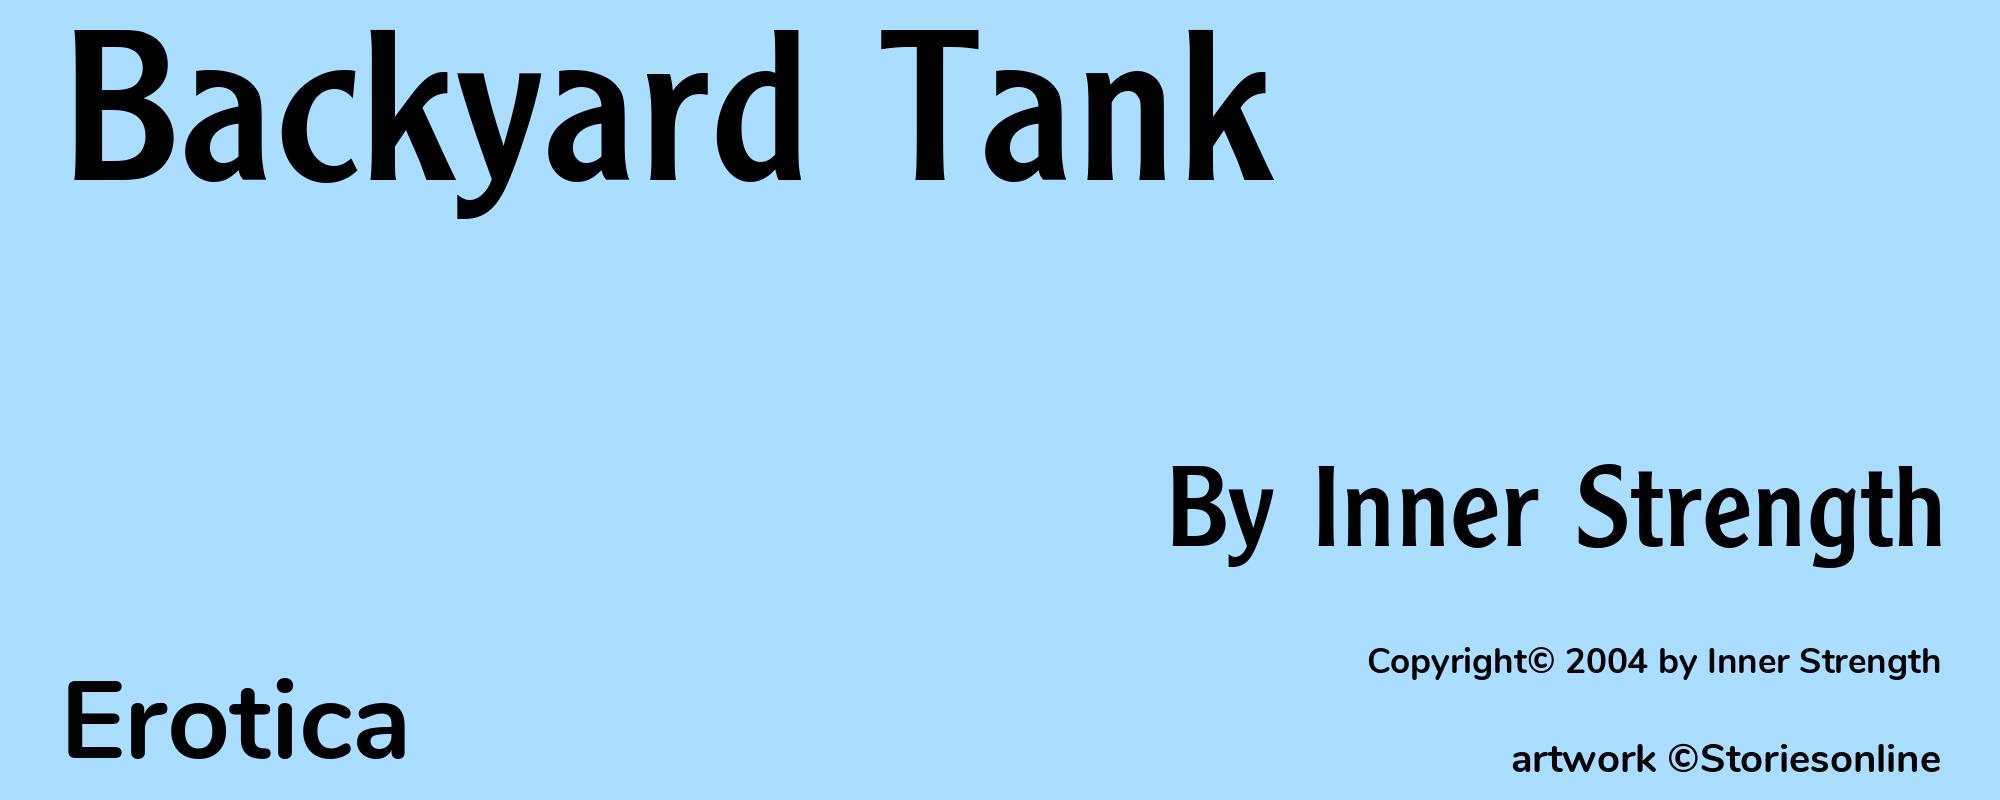 Backyard Tank - Cover